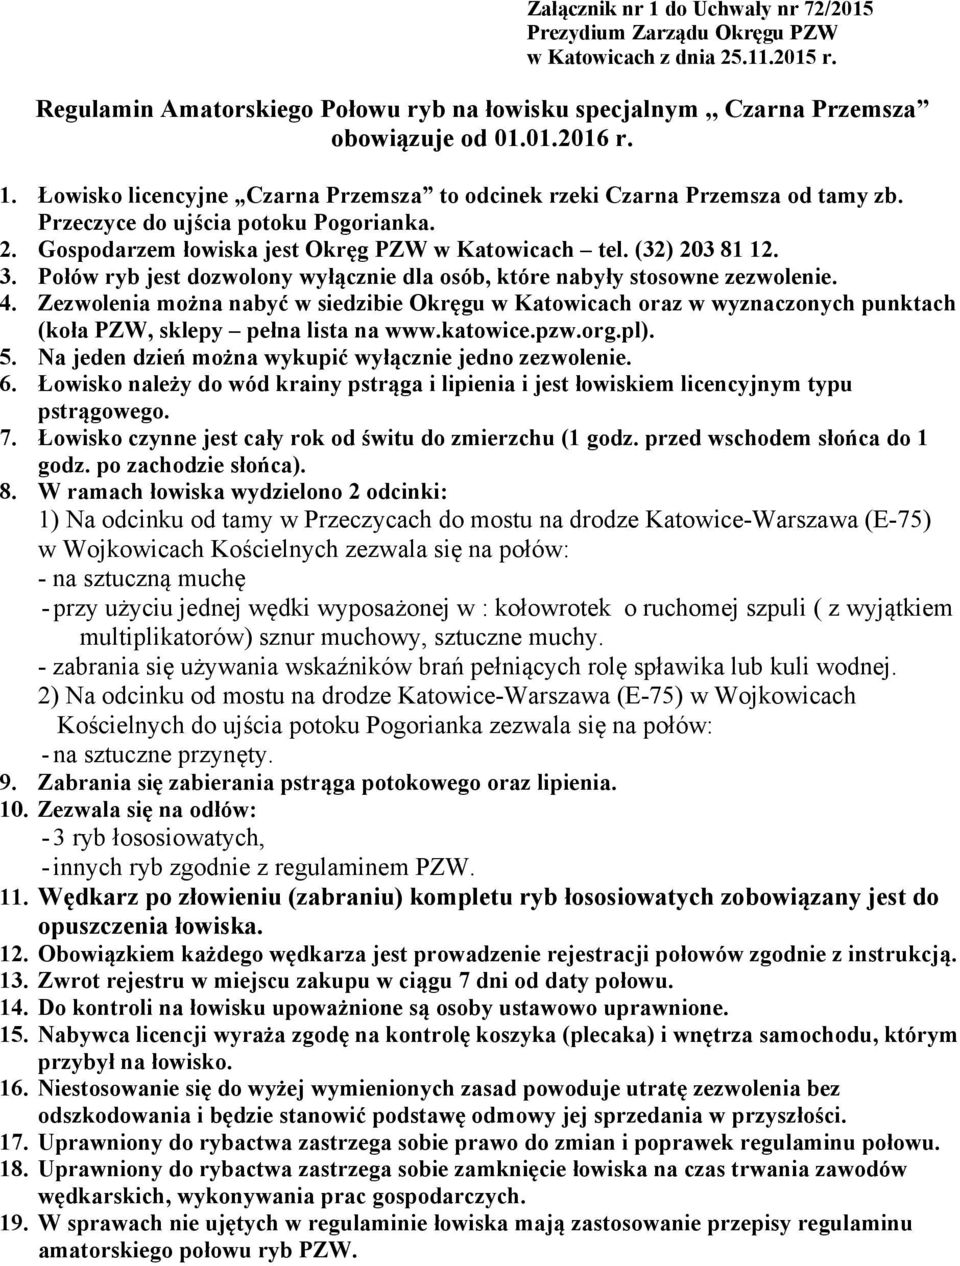 Zezwolenia można nabyć w siedzibie Okręgu w Katowicach oraz w wyznaczonych punktach (koła PZW, sklepy pełna lista na www.katowice.pzw.org.pl). 5.